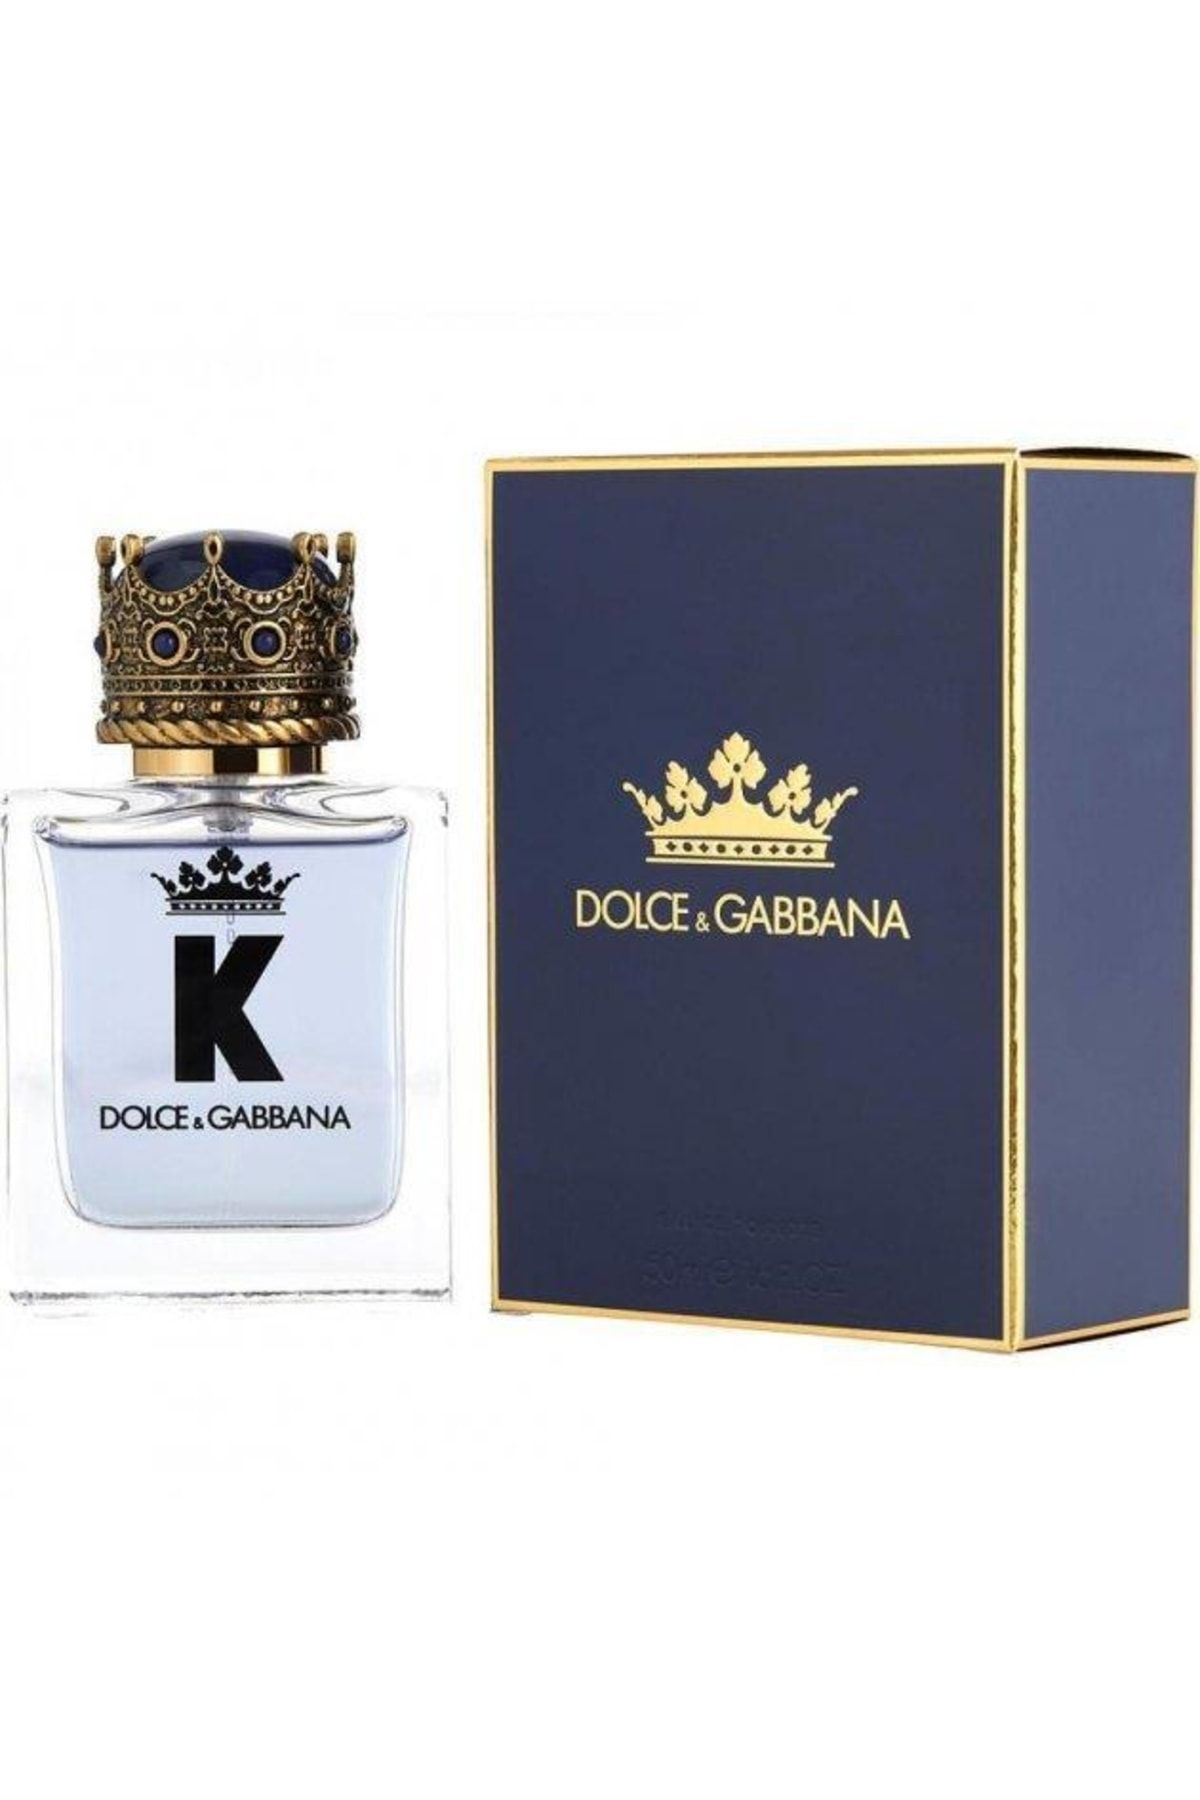 Дольче габбана корона цена. Dolce & Gabbana k for men 100 мл. Dolce Gabbana King 100ml. Dolce and Gabbana King 50 ml. Dolce&Gabbana King туалетная вода 50 мл.